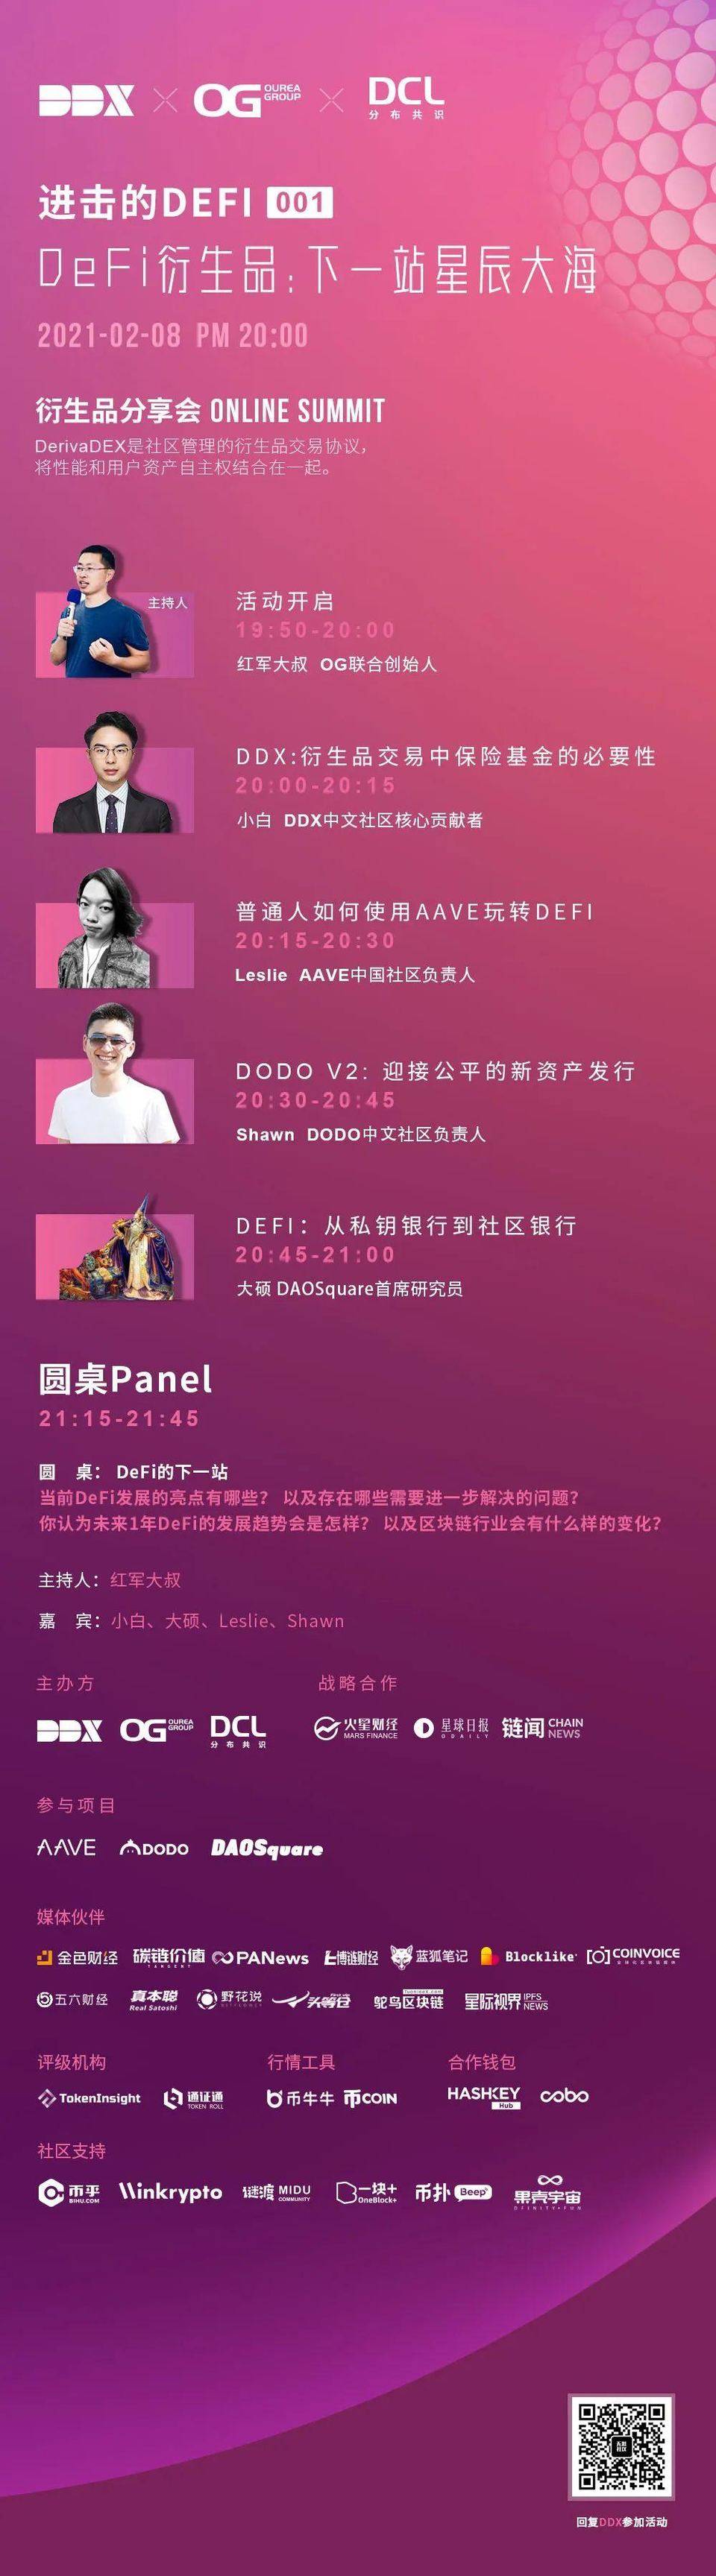 DDX 中文社區志願者招募首番揭曉